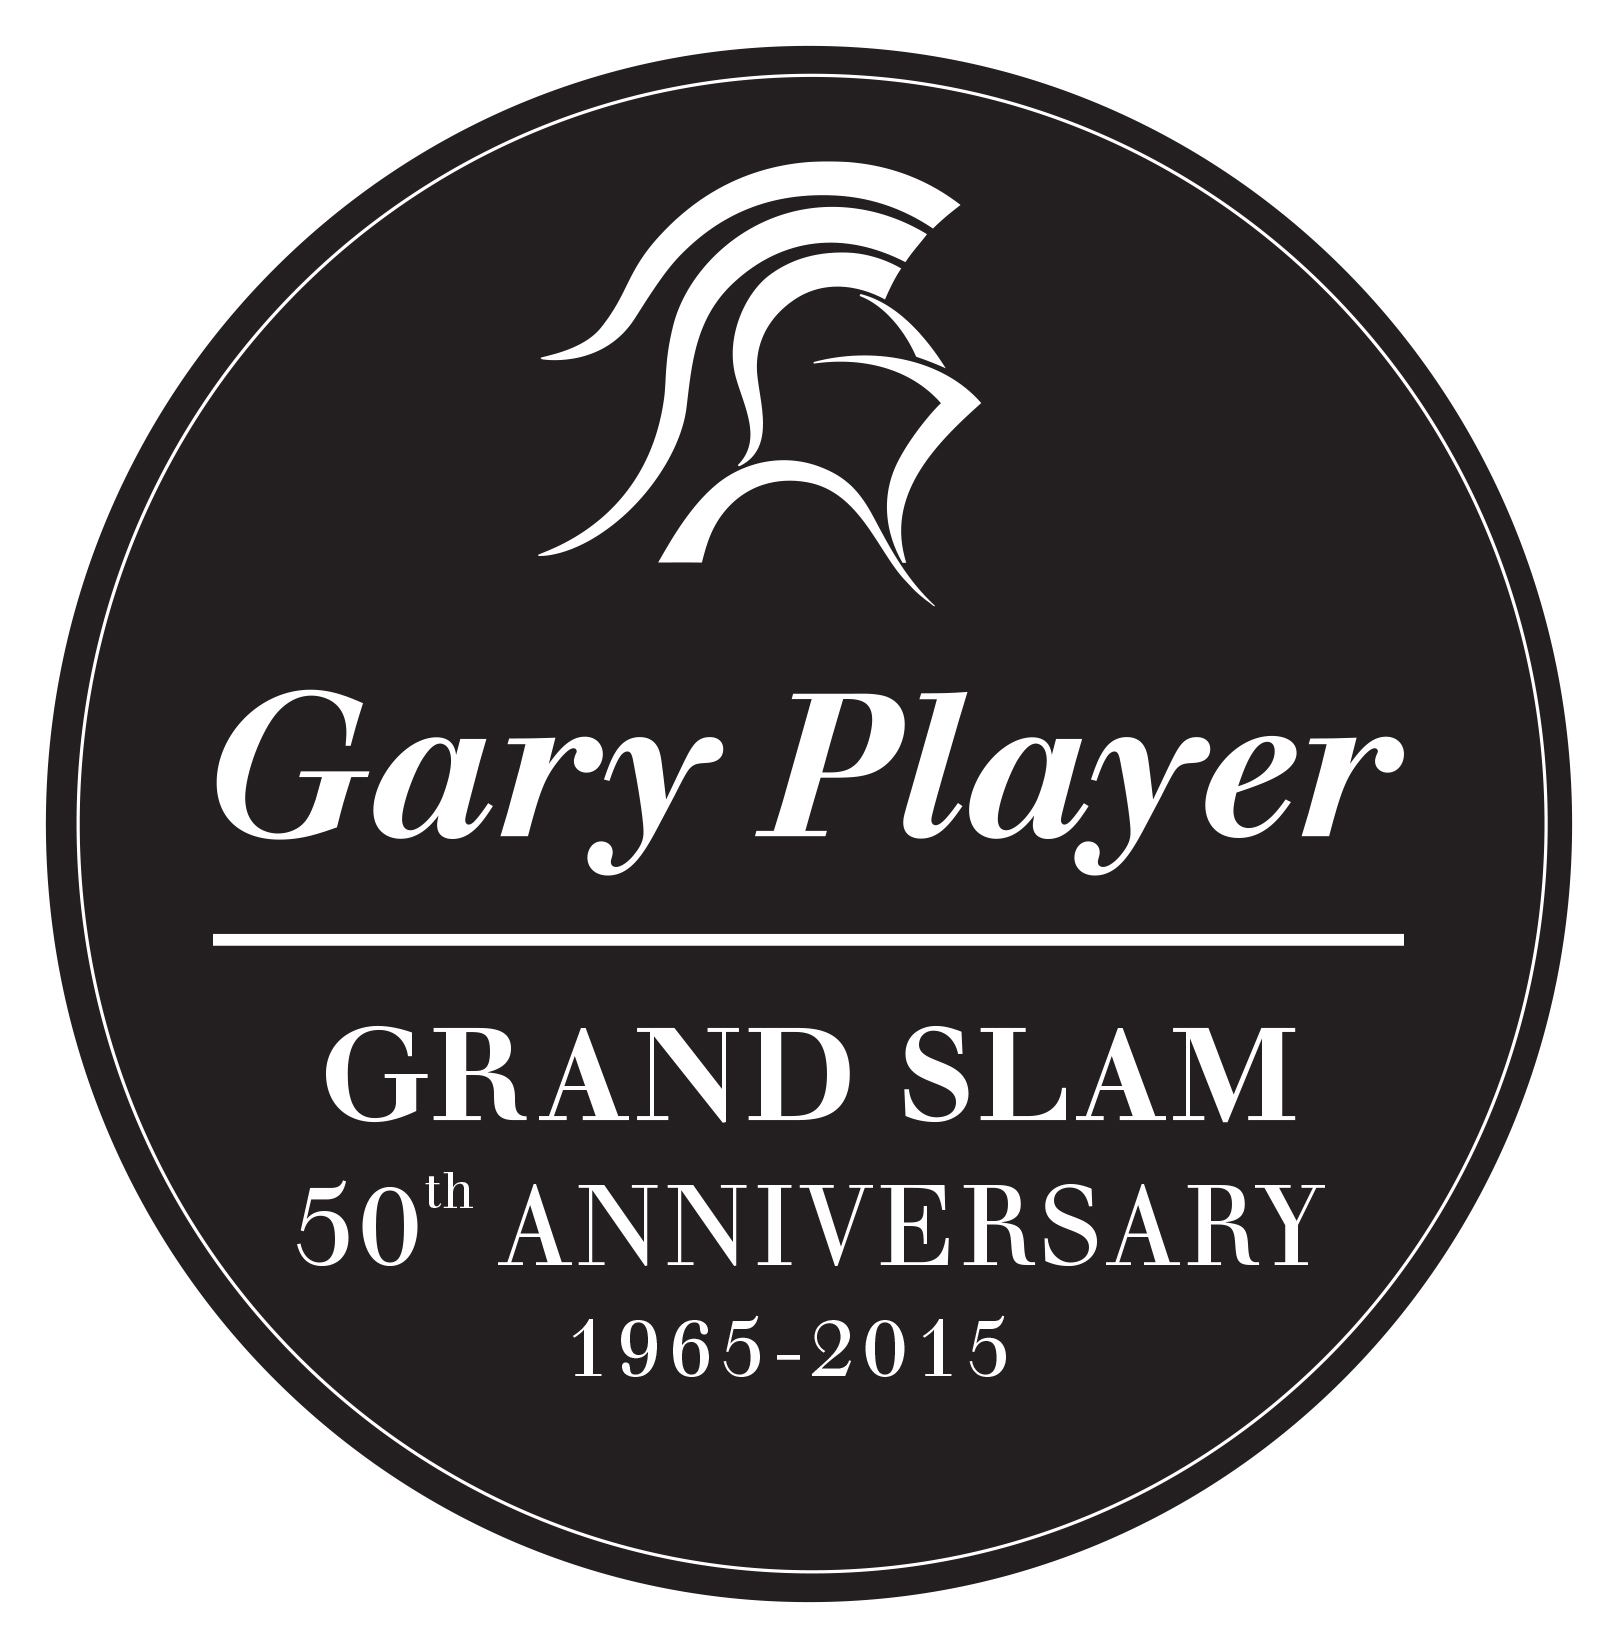 Gary Player Grand Slam 50th Anniversary Logo